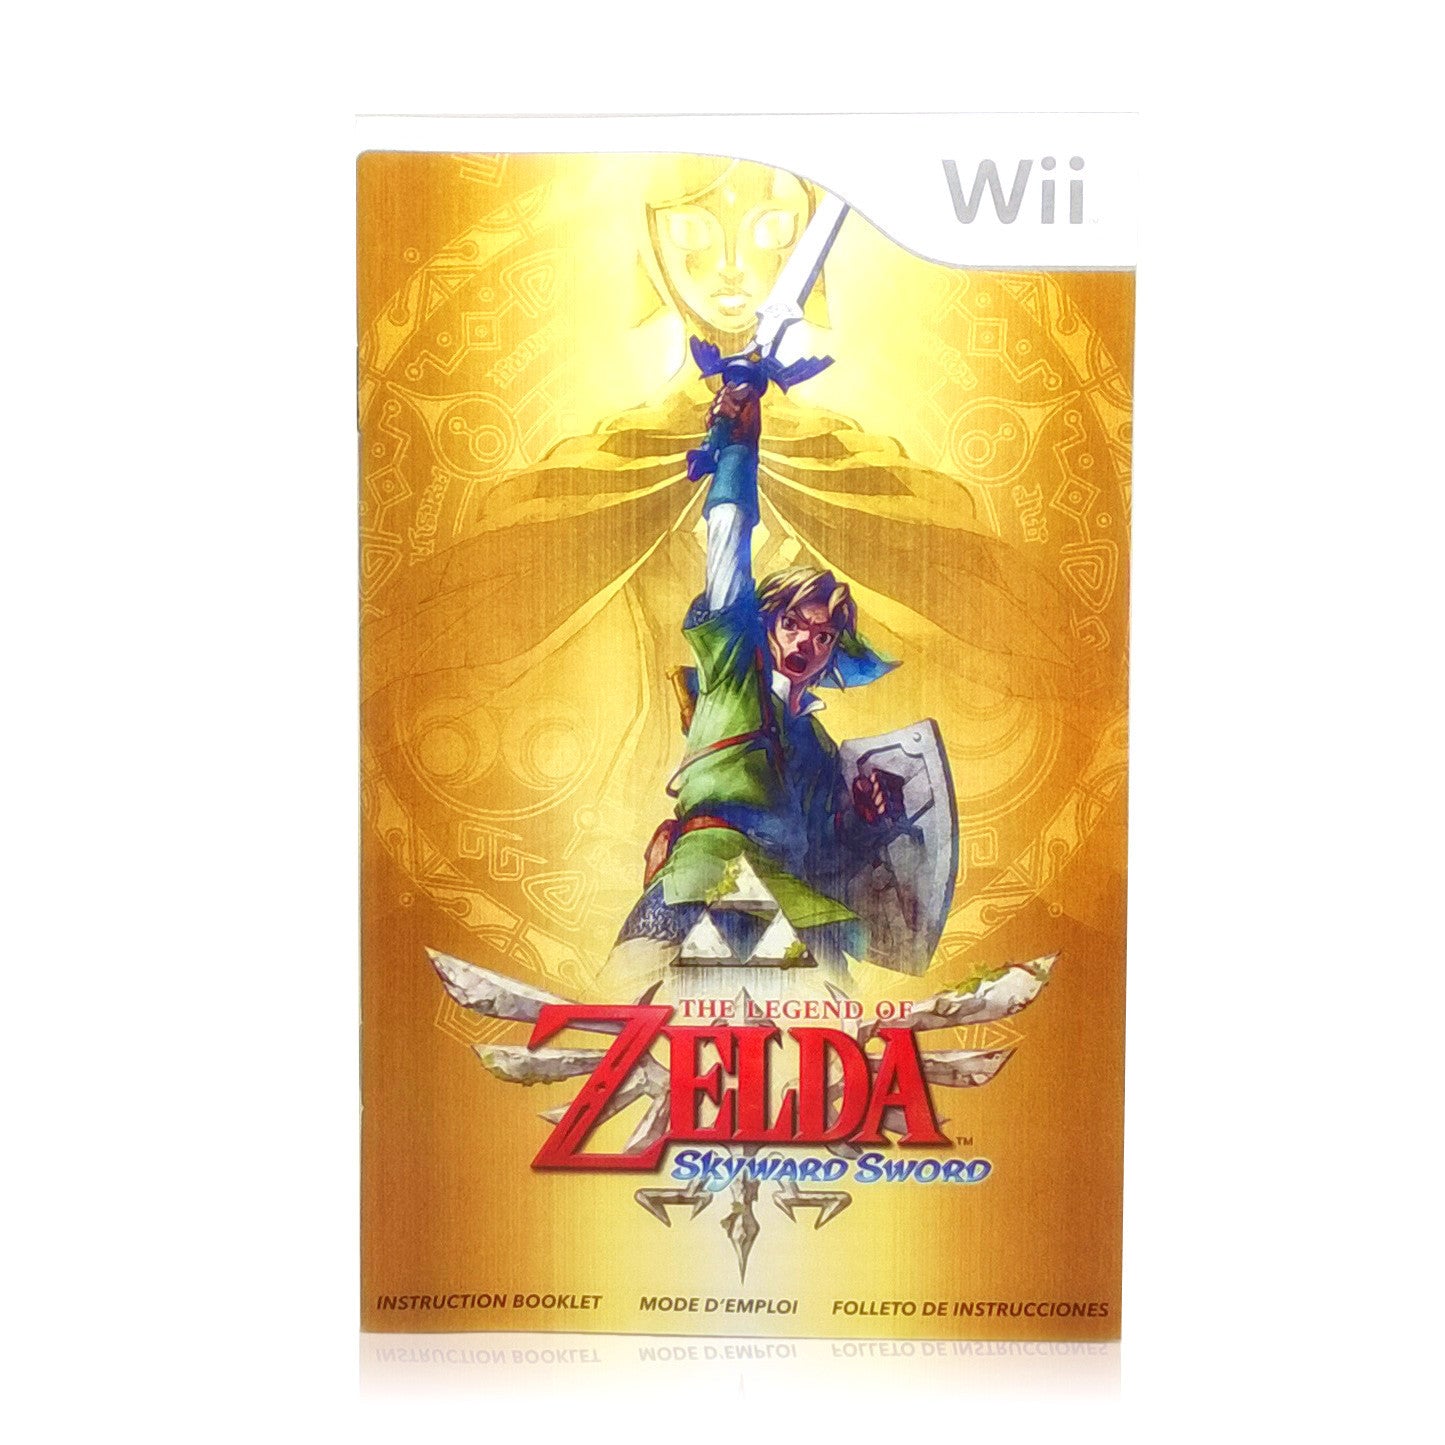 The Legend of Zelda: Skyward Sword Nintendo Wii Game - Manual